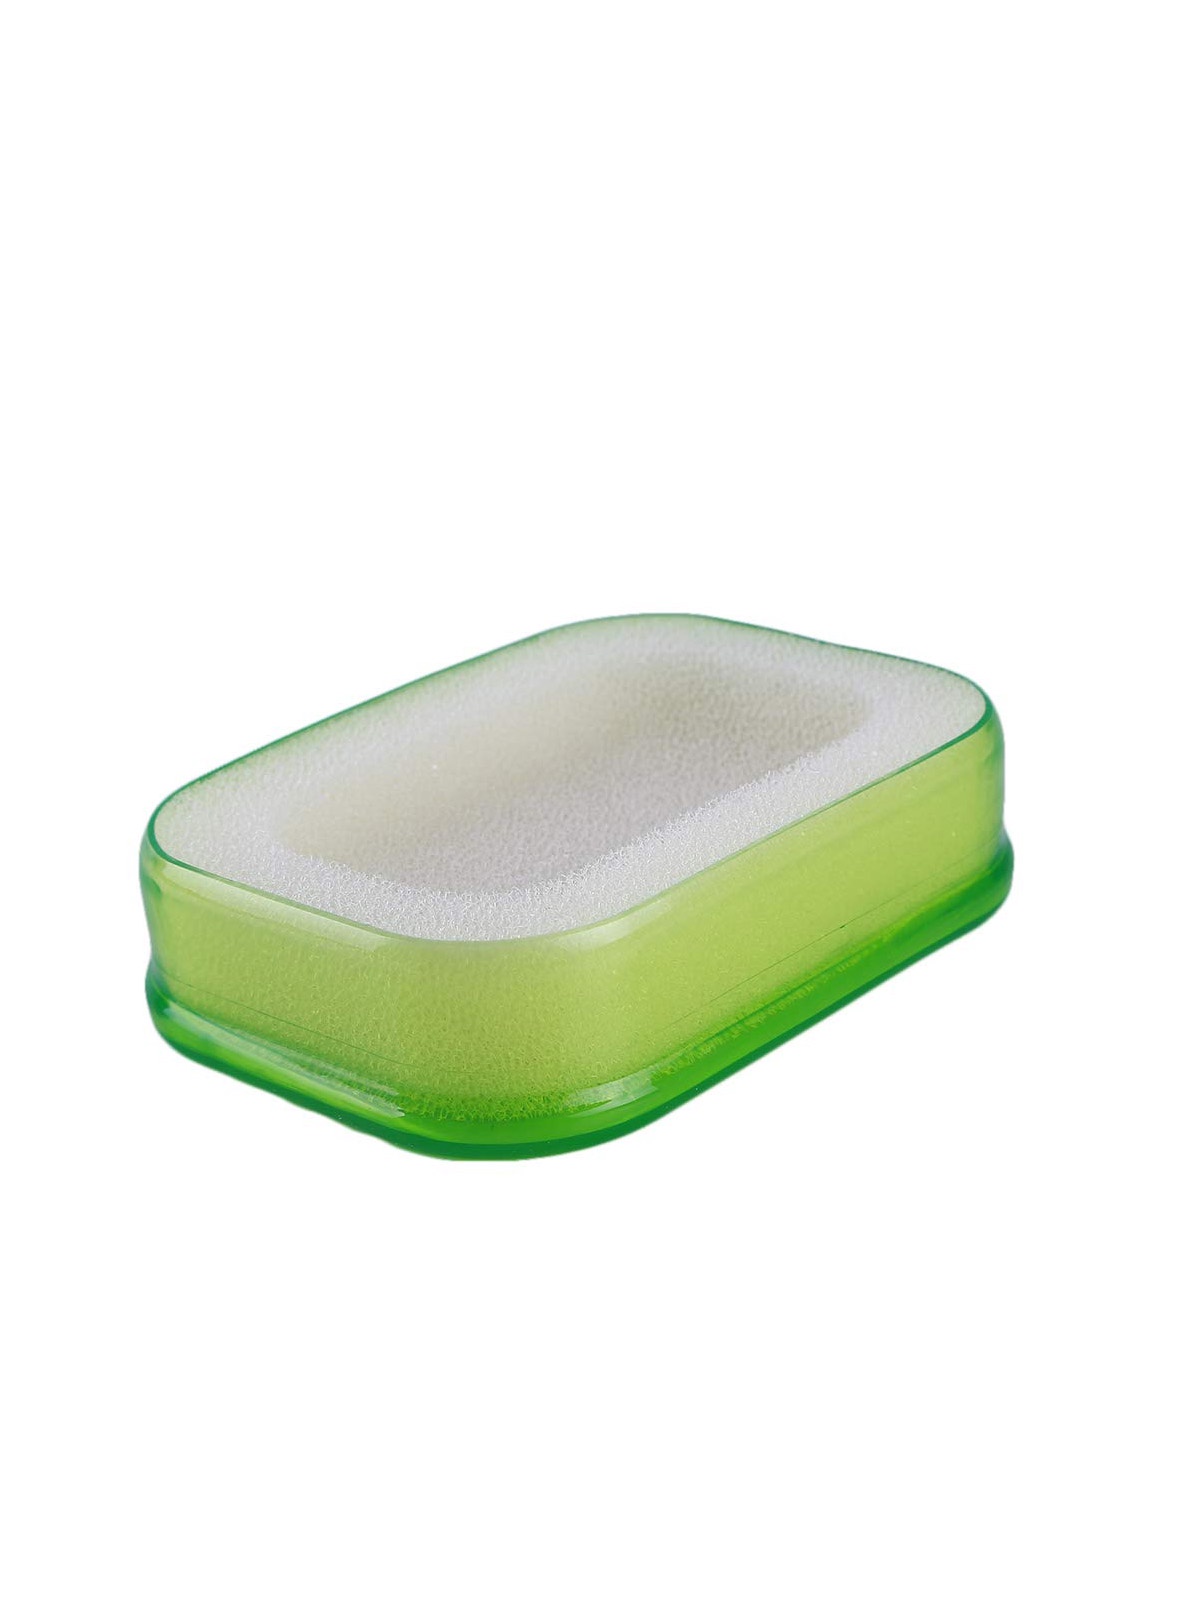 фото Мультифункциональная губка мыльница в пластиковой коробке, мыльница с губкой поролоновой (зел.) Blonder home